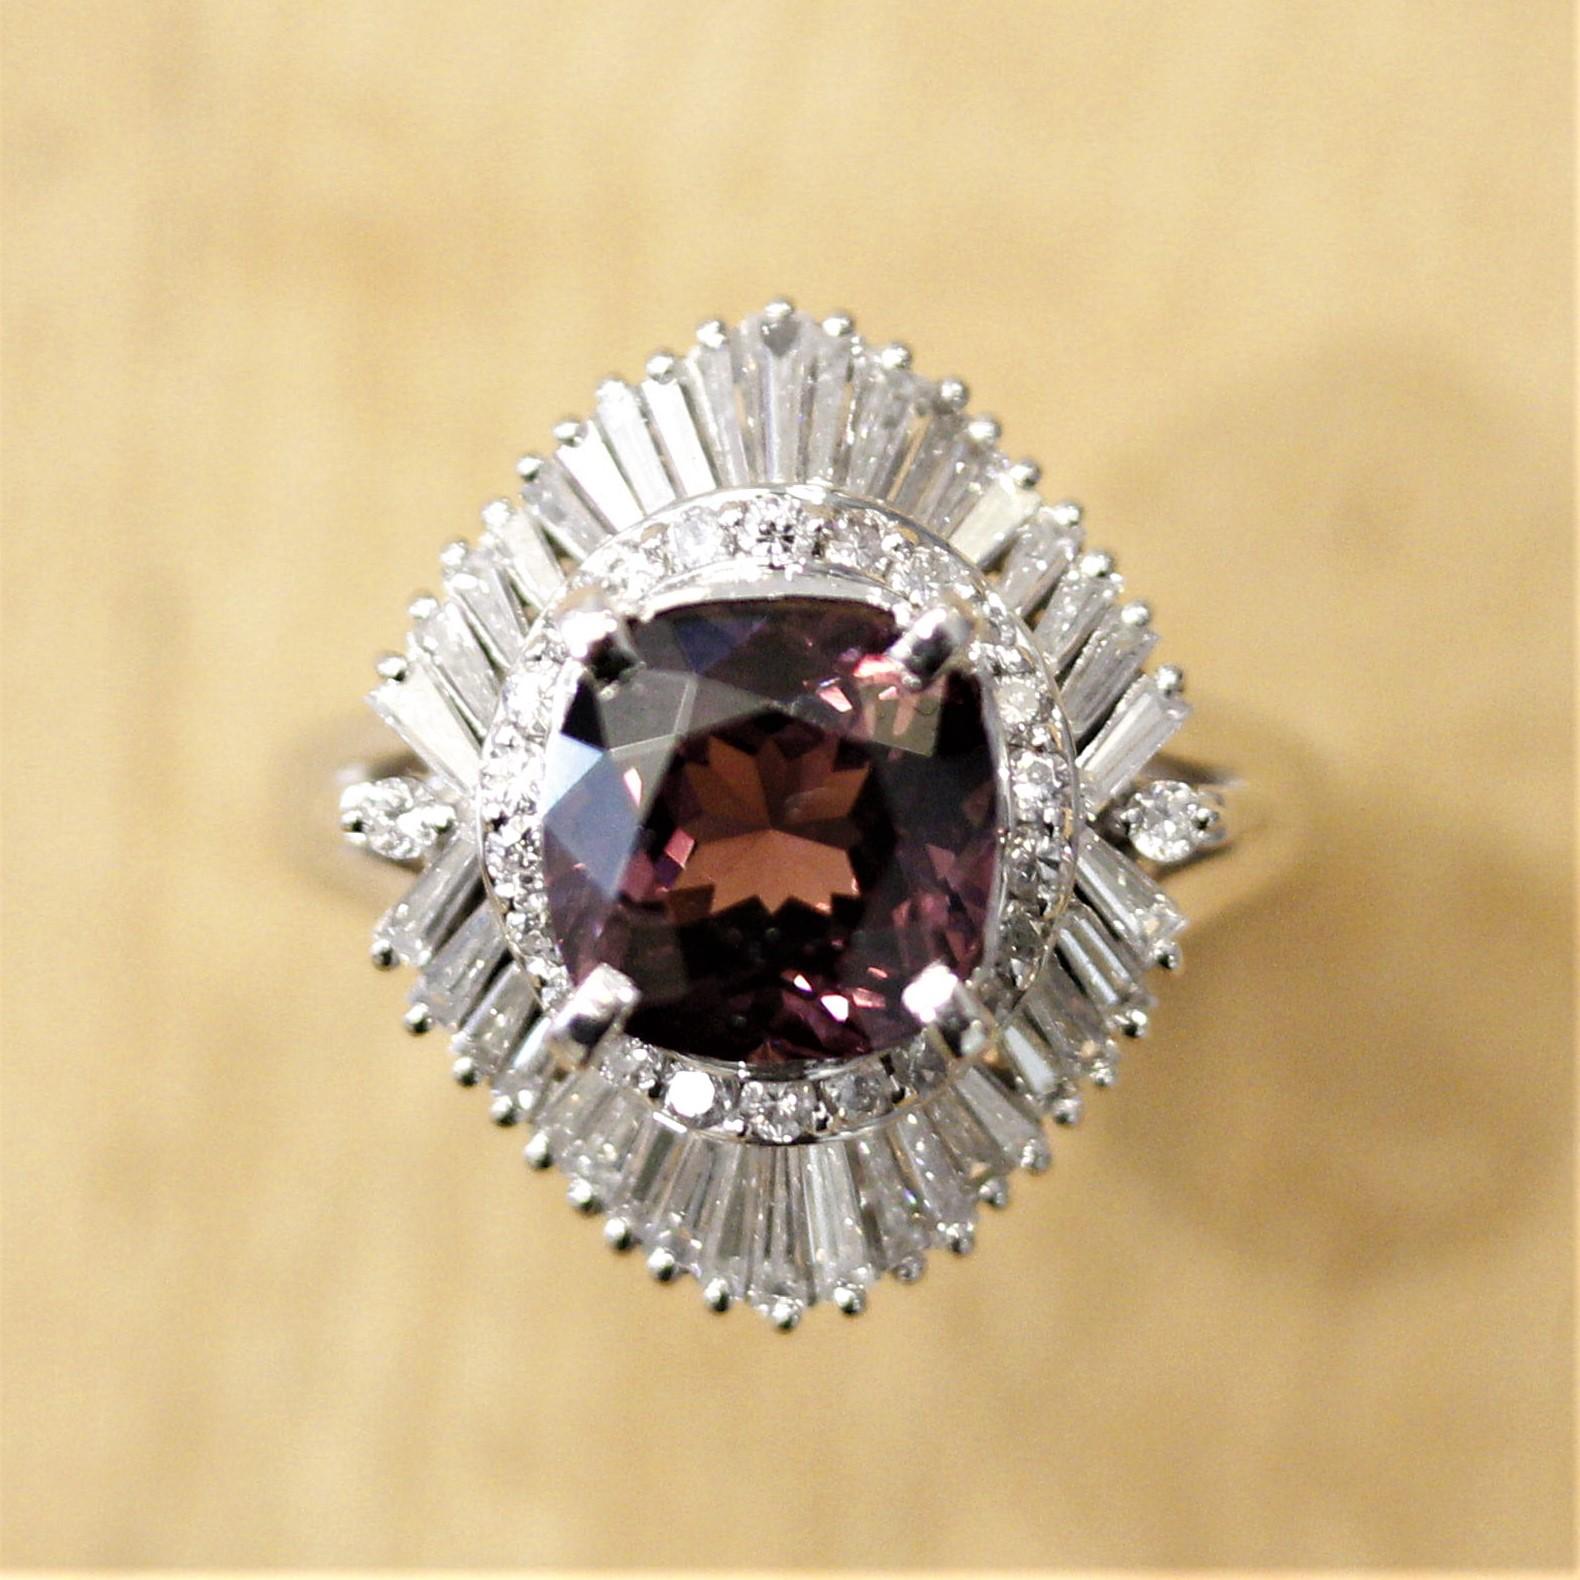 Ein schicker Ring mit einem Spinell von 3,42 Karat und einer einzigartigen rosa-violetten Farbe. Aufgrund des hohen Brechungsindex des Spinells glänzt der Stein mit hervorragender Brillanz und Szintillation. Darüber hinaus ist dieses Exemplar frei